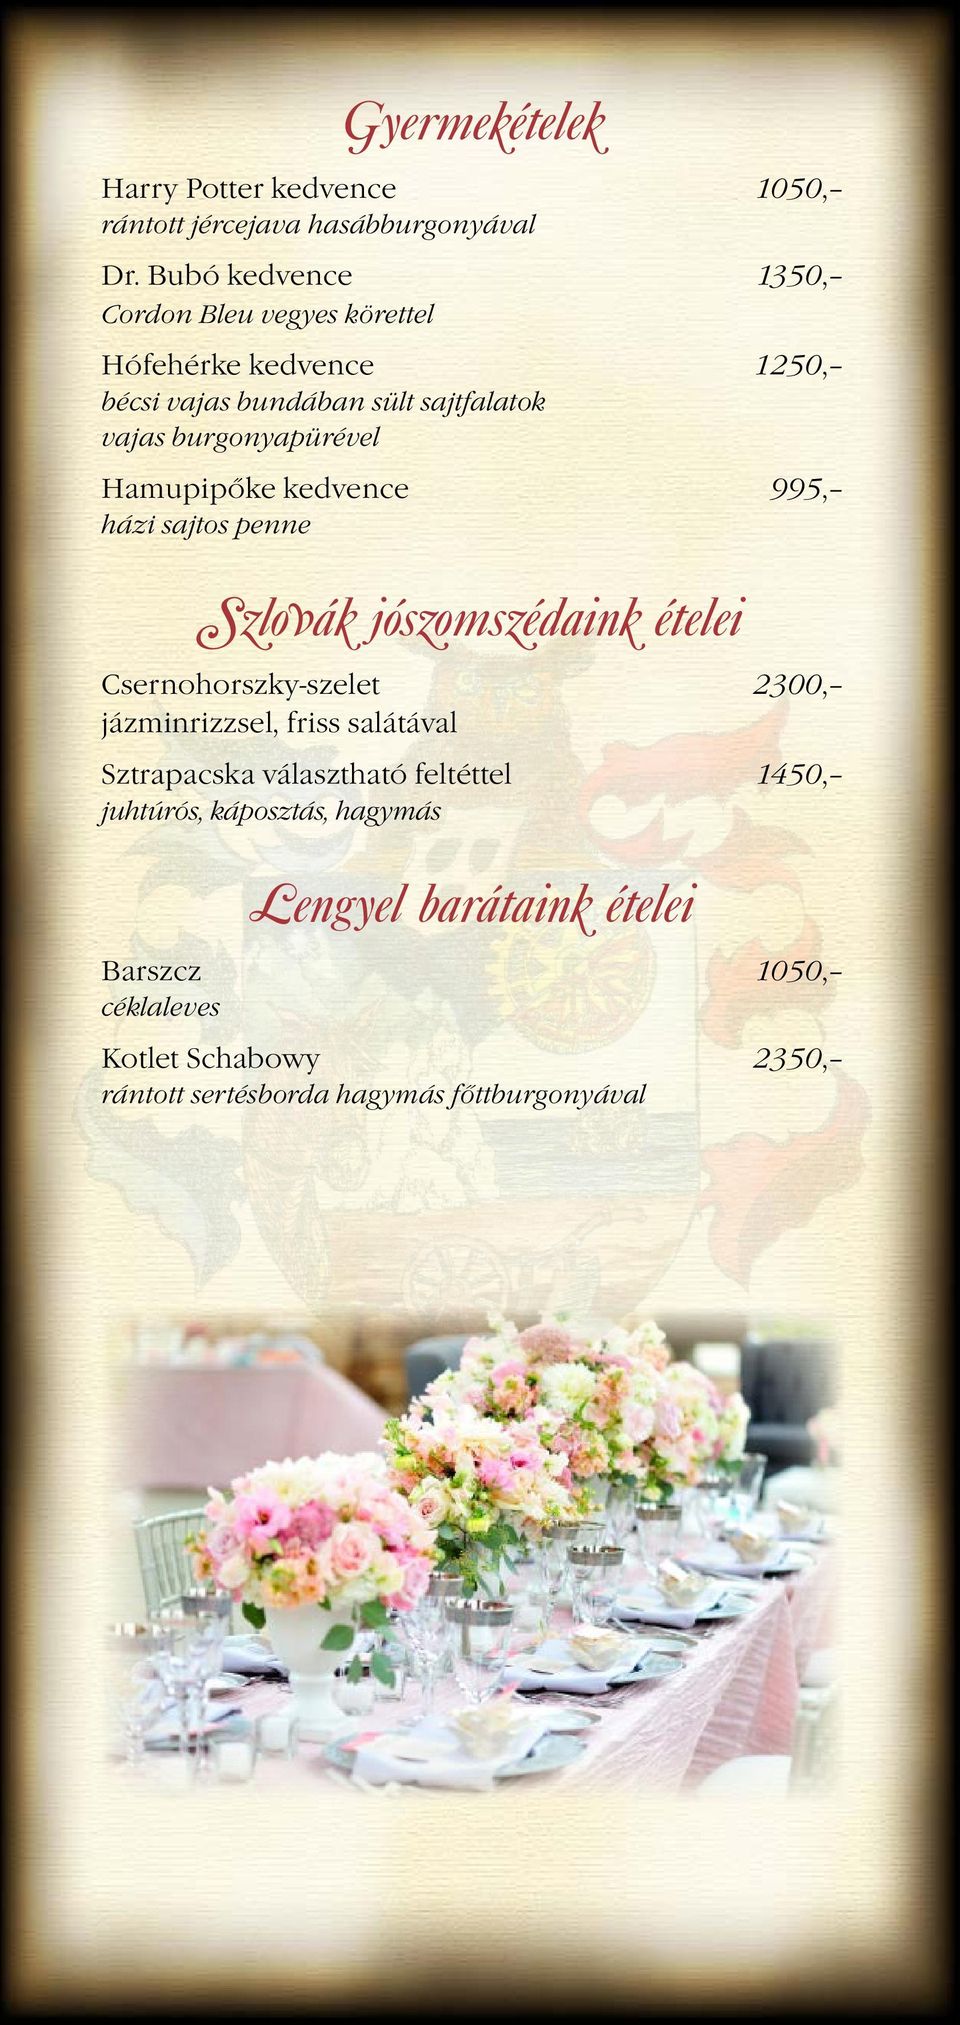 Hamupipőke kedvence 995, házi sajtos penne Szlovák jószomszédaink ételei Csernohorszky-szelet 2300, jázminrizzsel, friss salátával